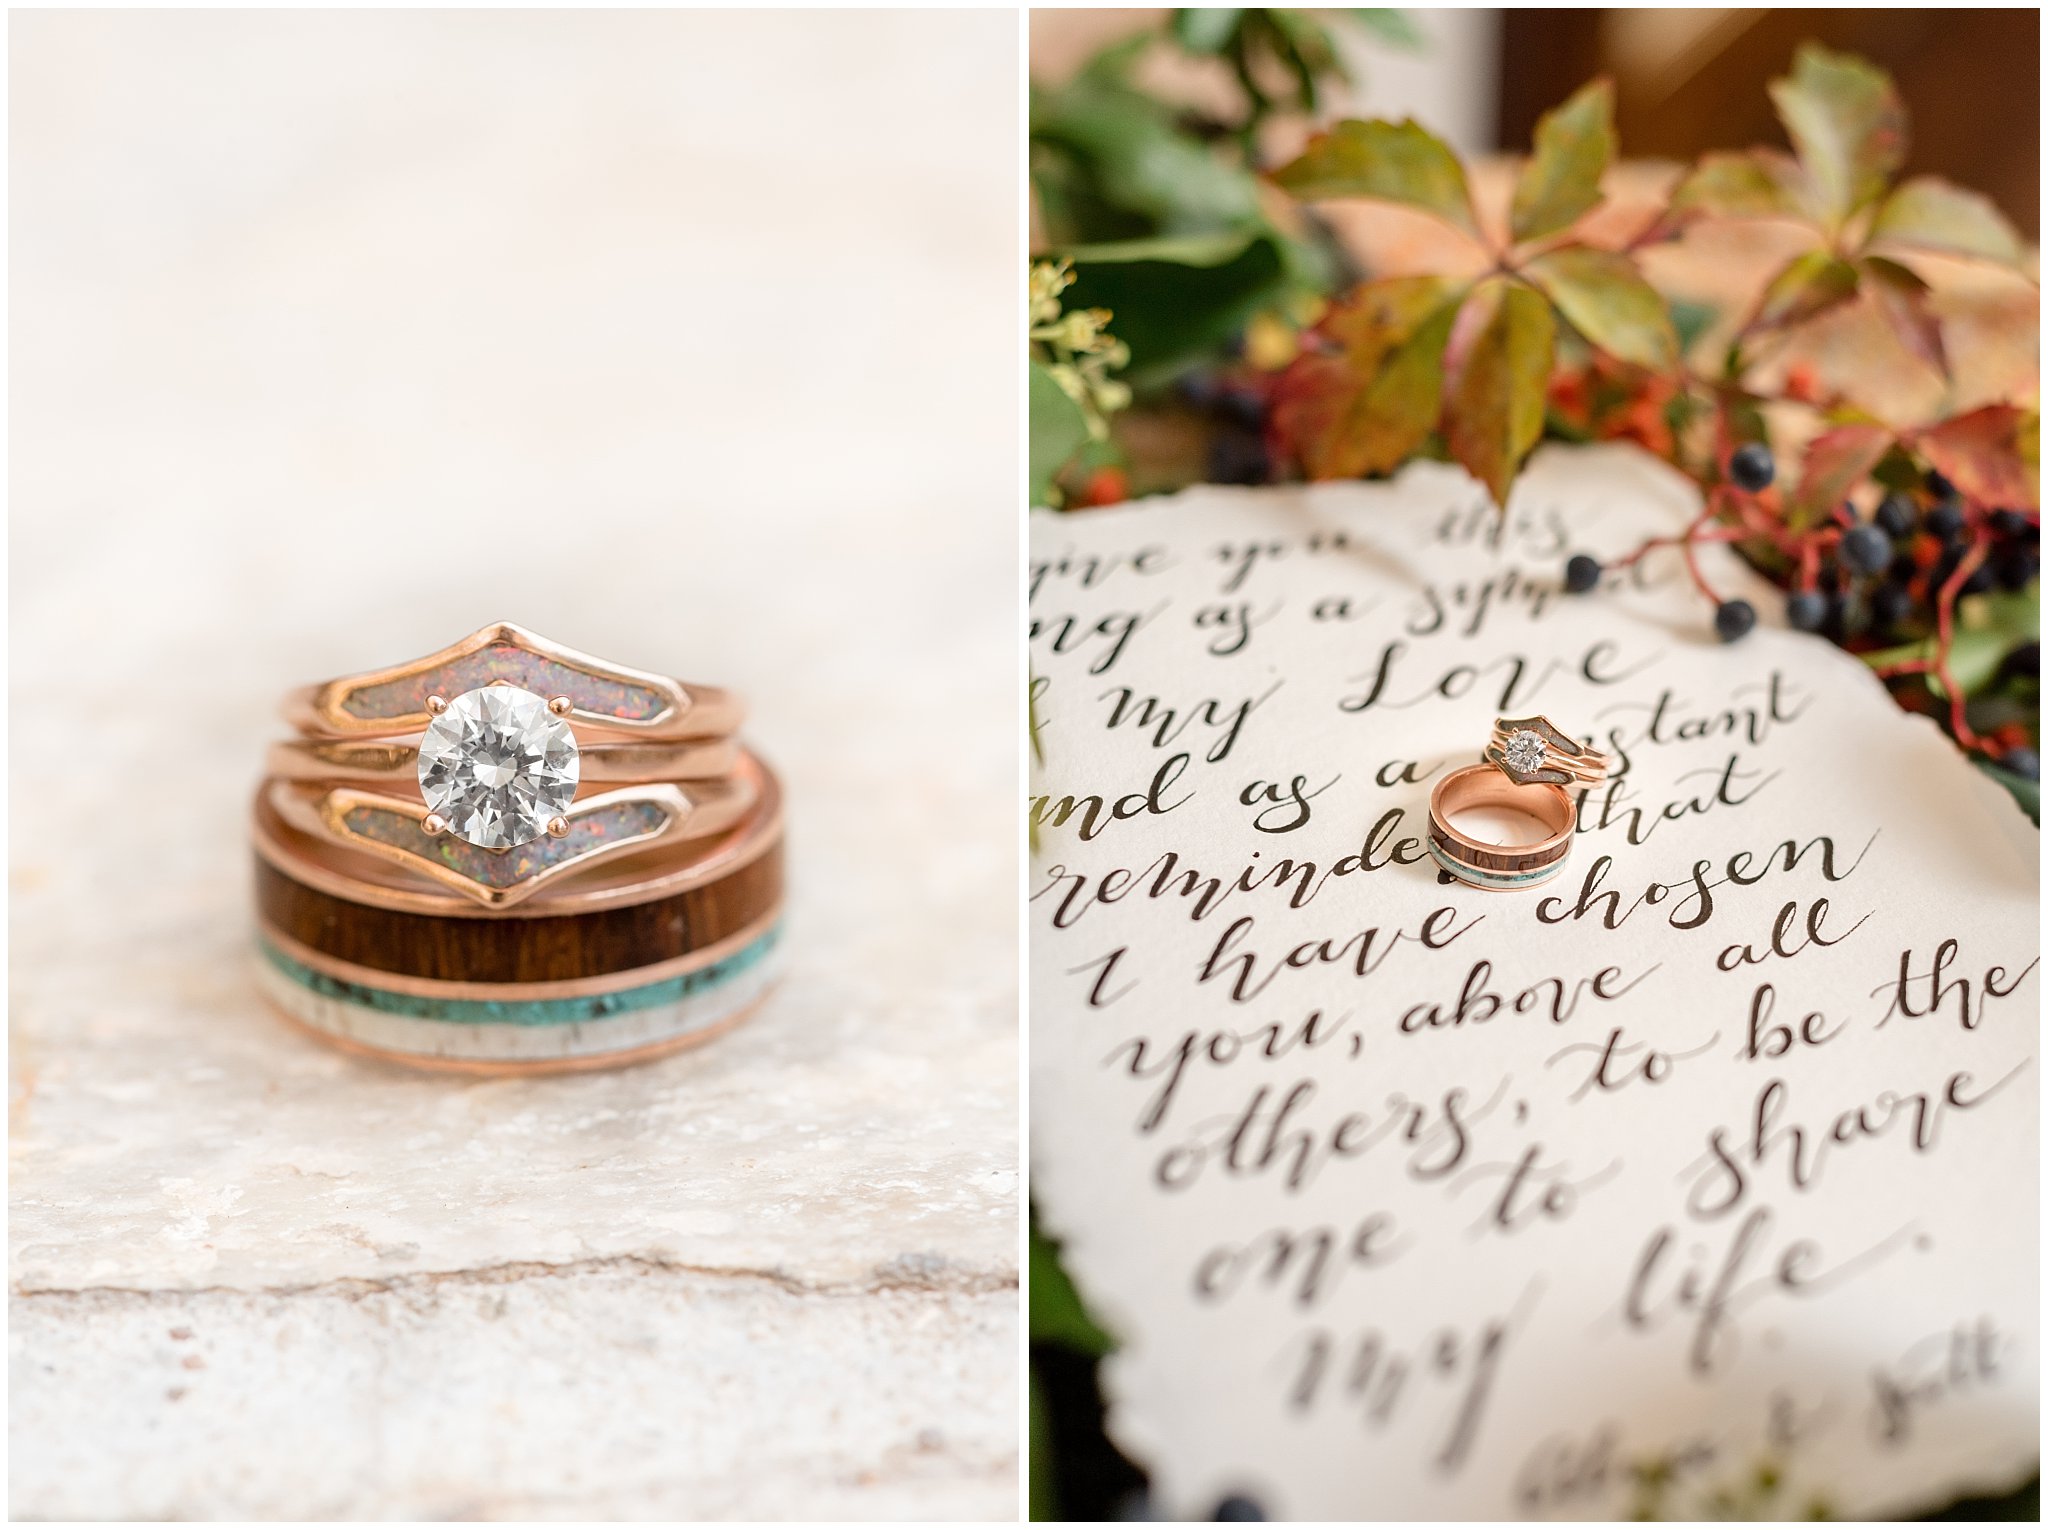 Staghead Designs custom wedding rings | Calligraphy wedding vows | Elegant Fall wedding | Wadley Farms Utah | Jessie and Dallin